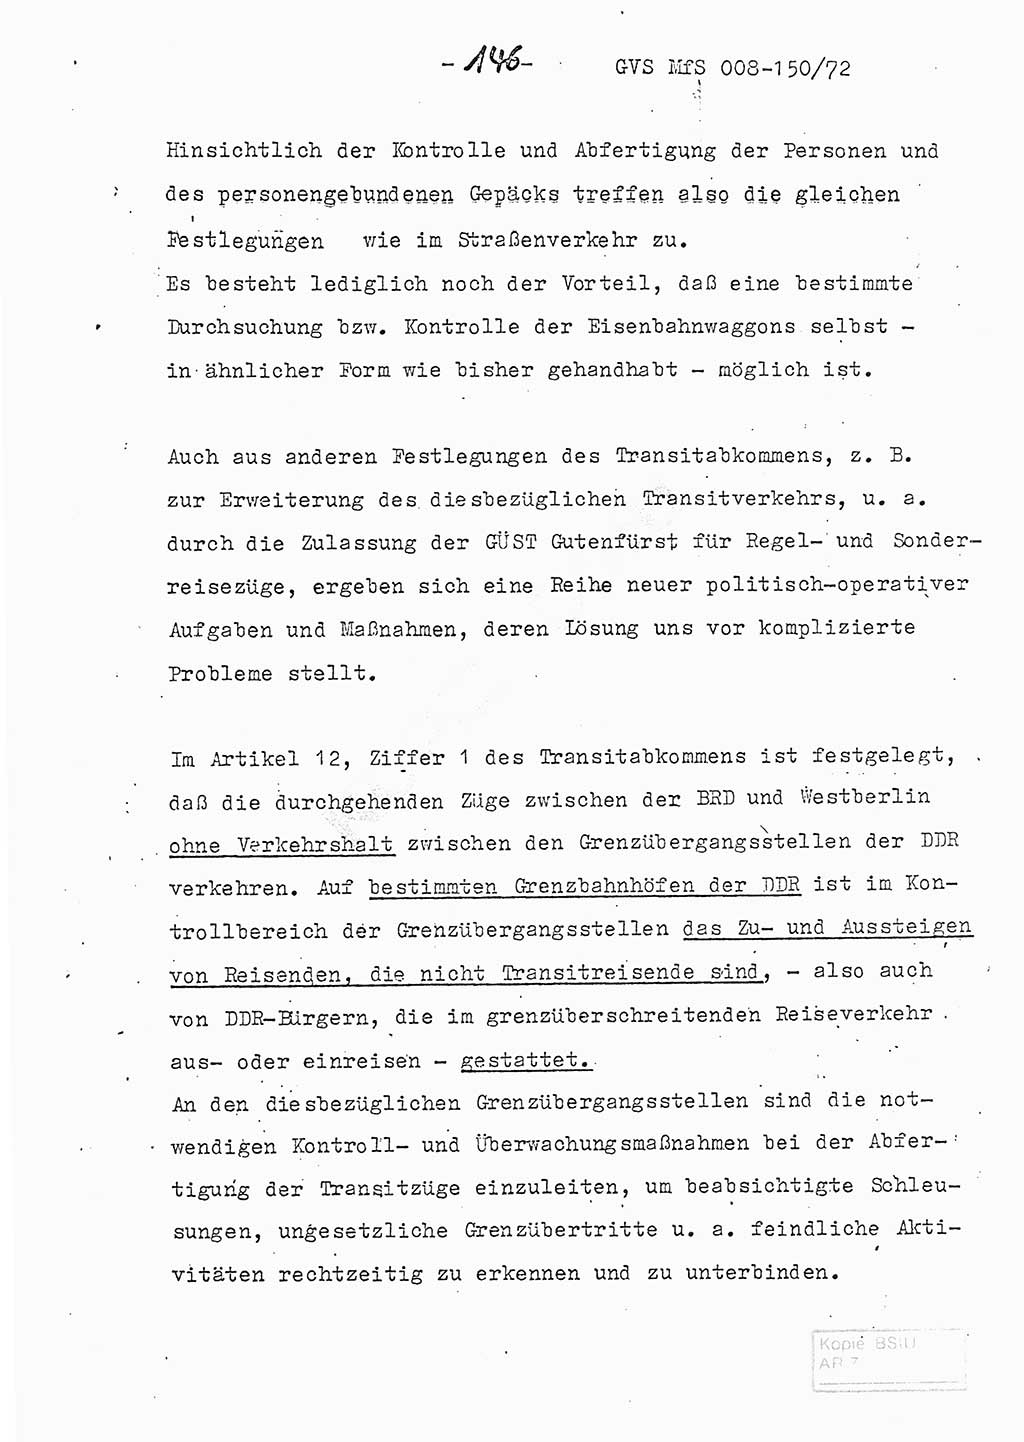 Referat (Entwurf) des Genossen Minister (Generaloberst Erich Mielke) auf der Dienstkonferenz 1972, Ministerium für Staatssicherheit (MfS) [Deutsche Demokratische Republik (DDR)], Der Minister, Geheime Verschlußsache (GVS) 008-150/72, Berlin 25.2.1972, Seite 146 (Ref. Entw. DK MfS DDR Min. GVS 008-150/72 1972, S. 146)